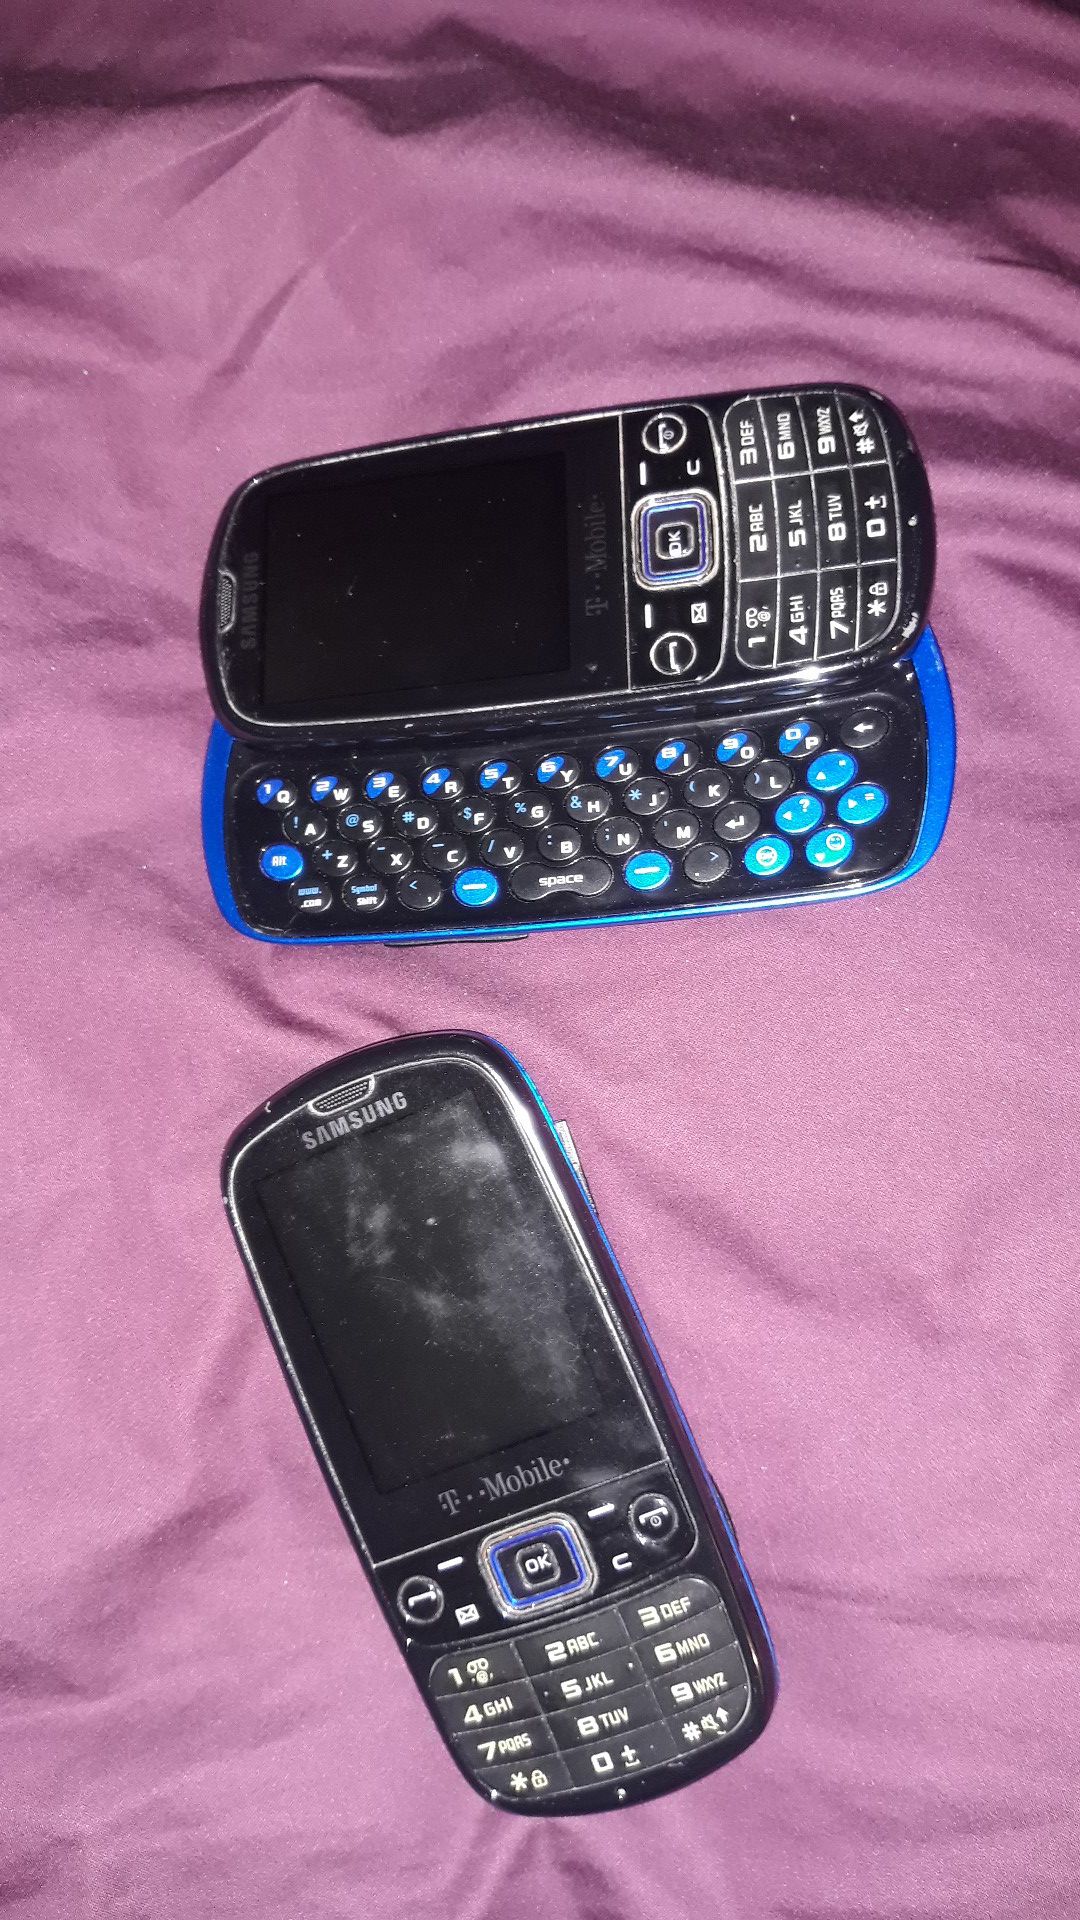 Samsung old school slider phones. T mobile service.